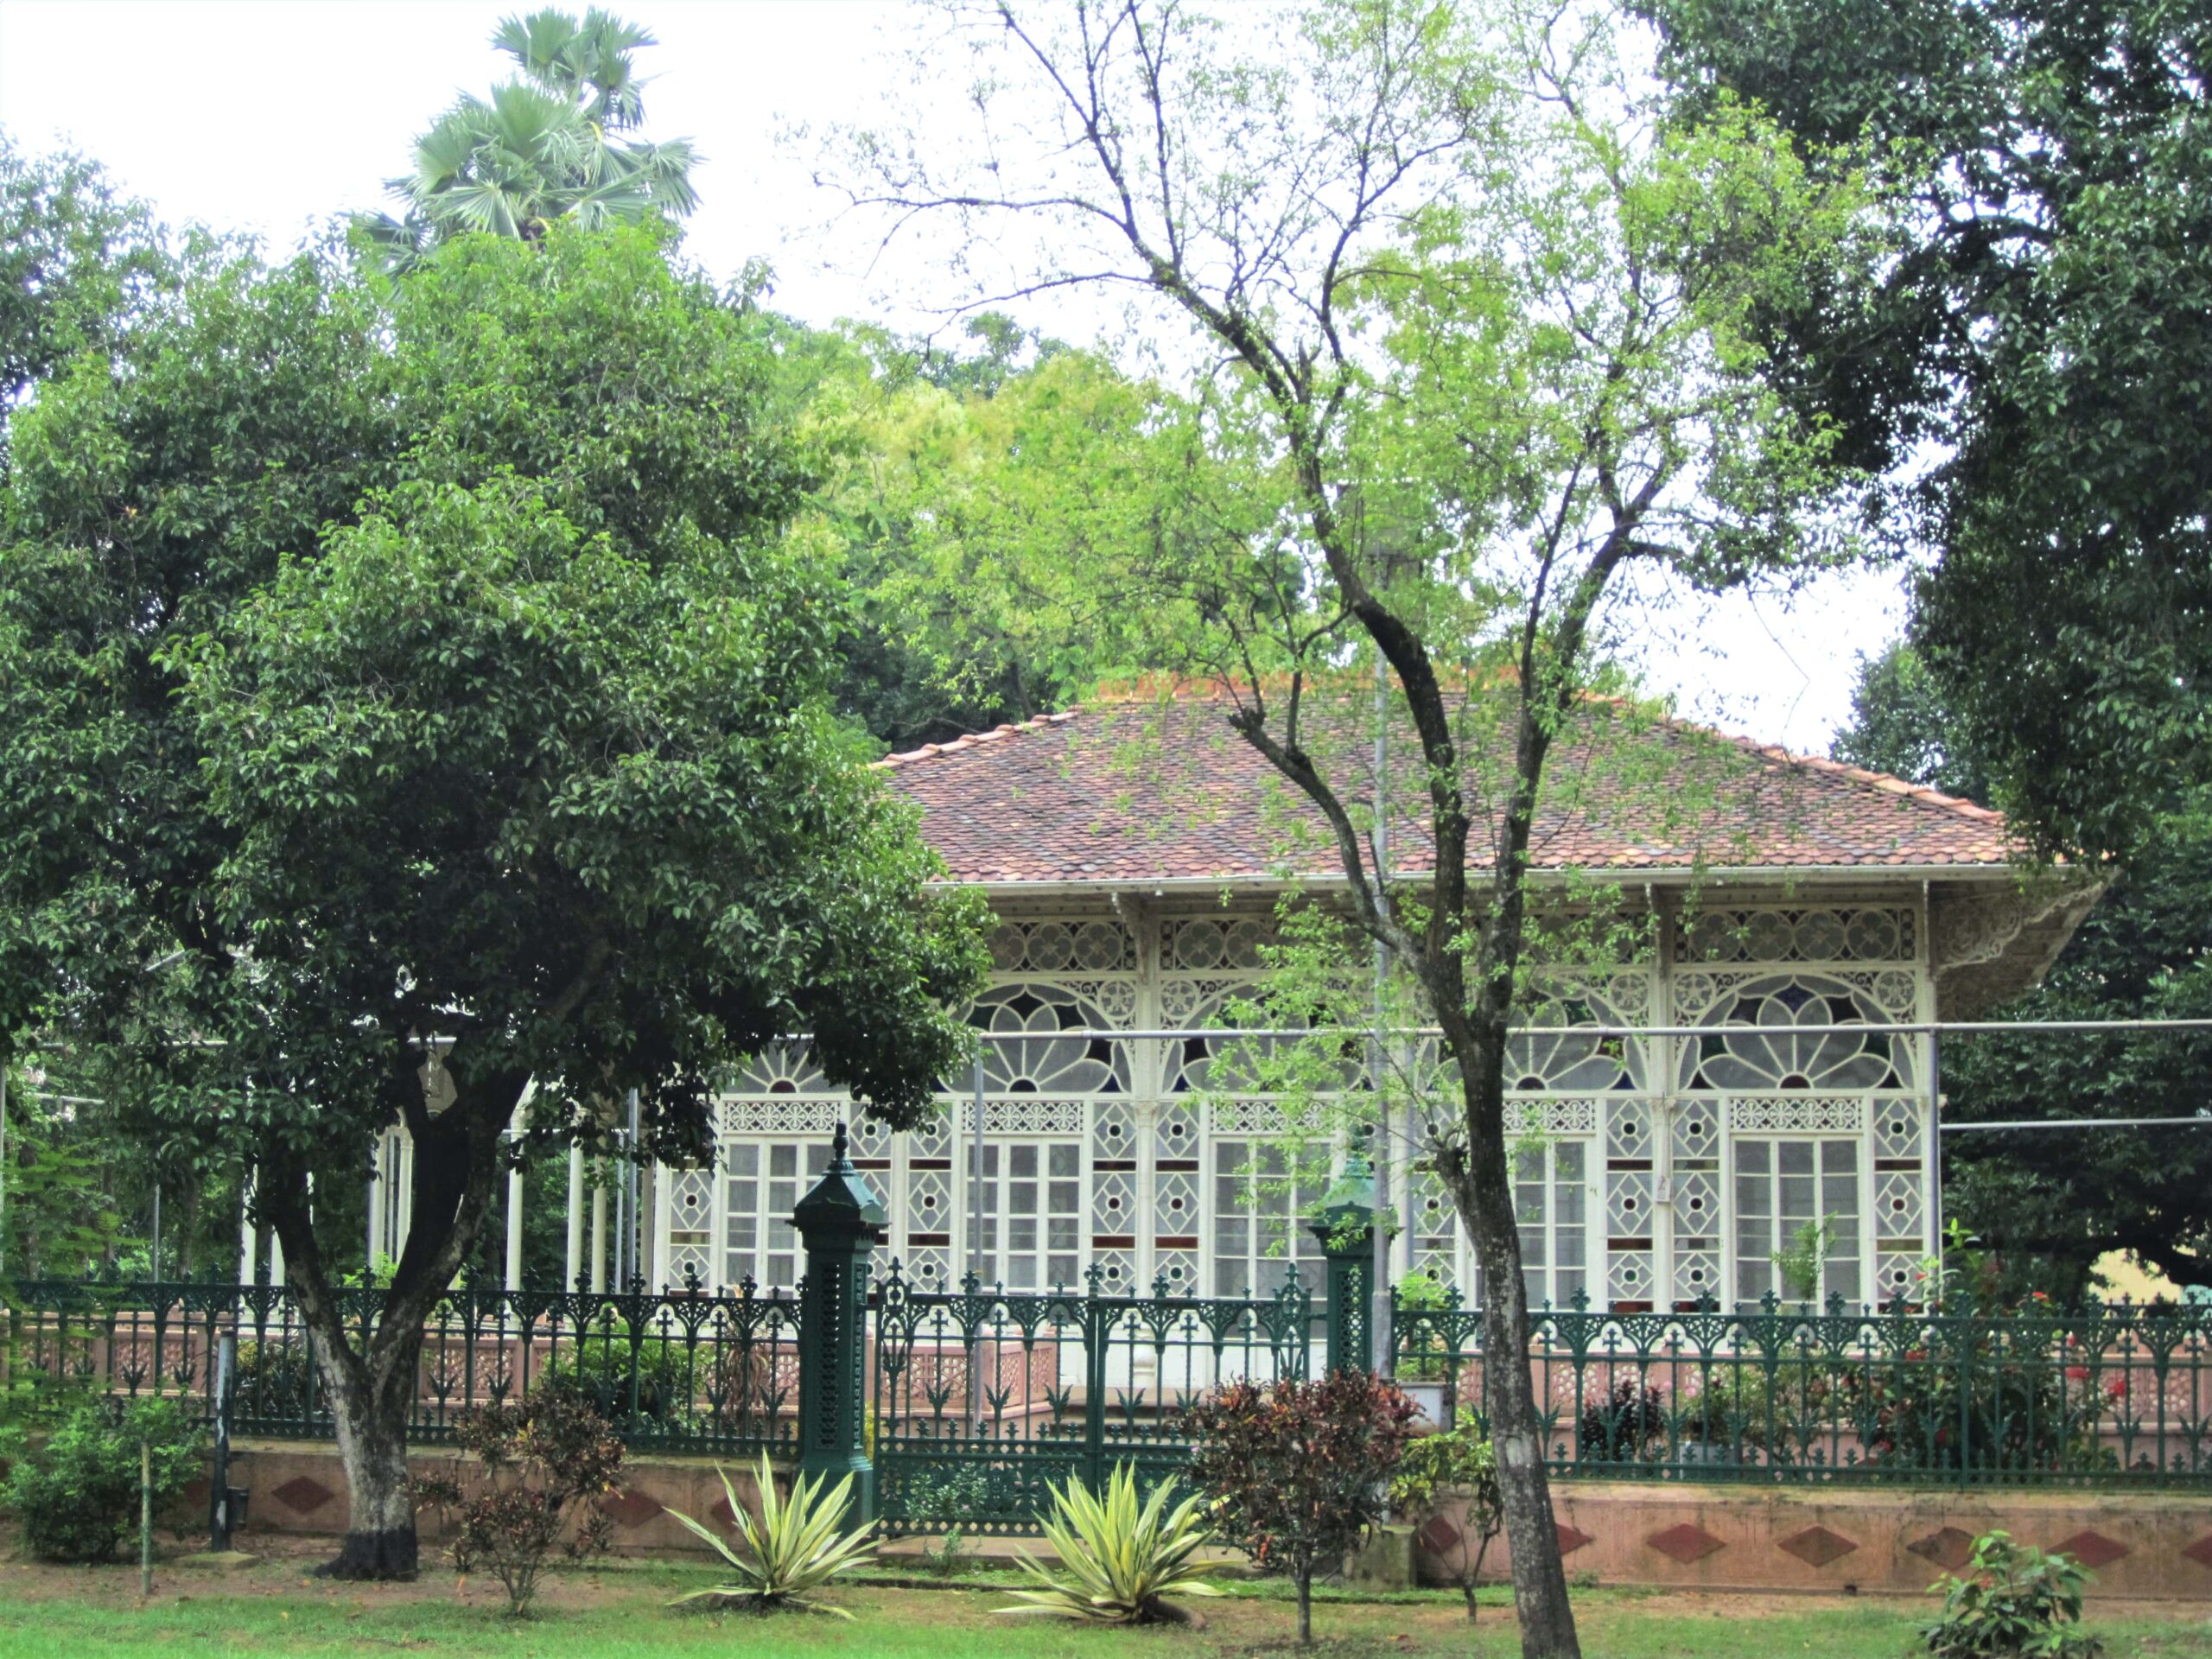 The Famous Glass House or Upasana Griha within Vishva Bharati University Complex